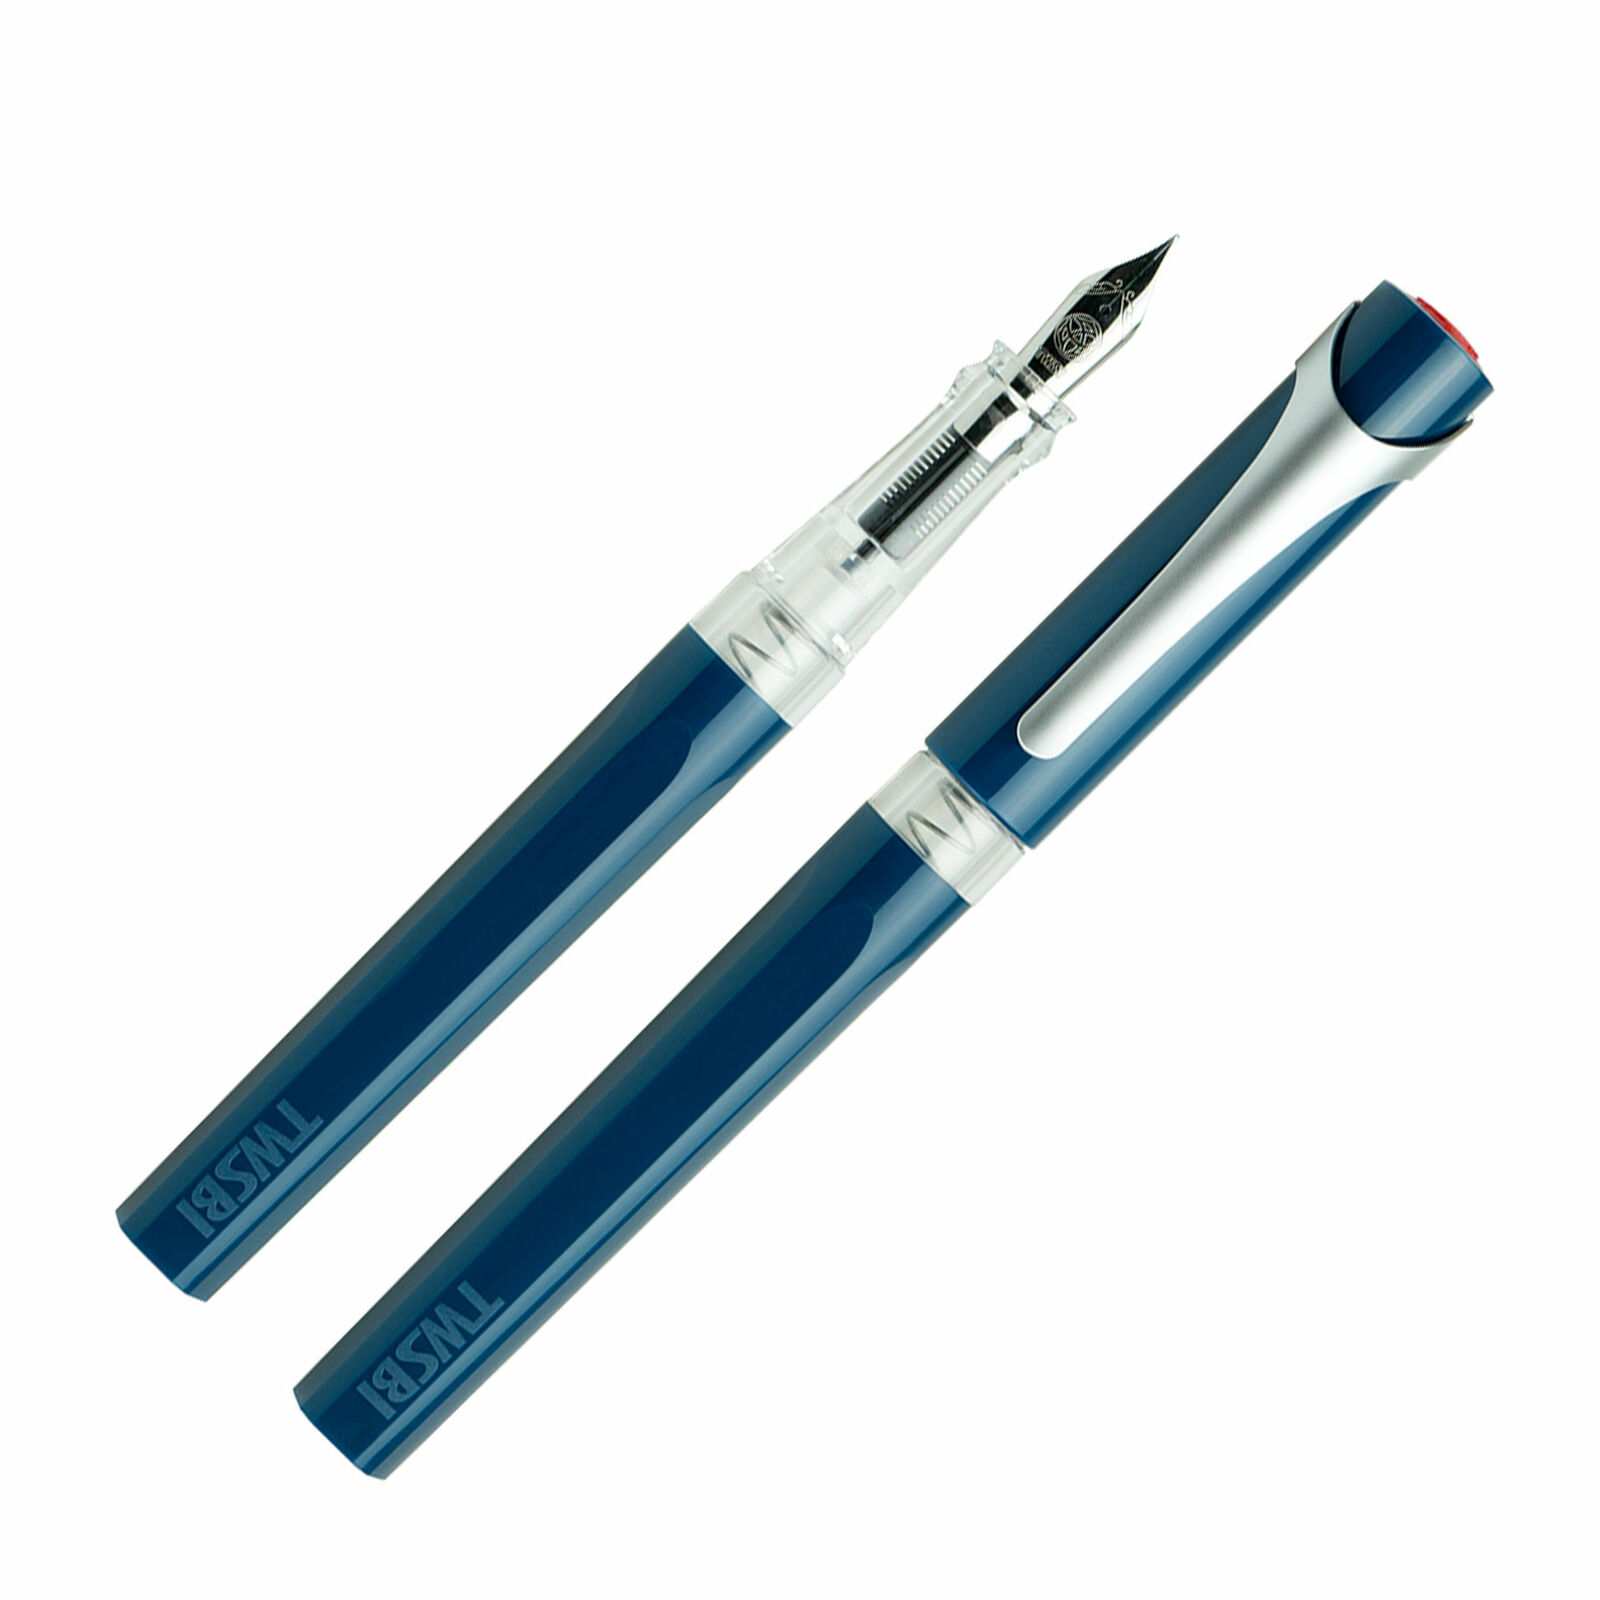 TWSBI Swipe Fountain Pen in Prussian Blue - Broad Point - NEW in Original Box